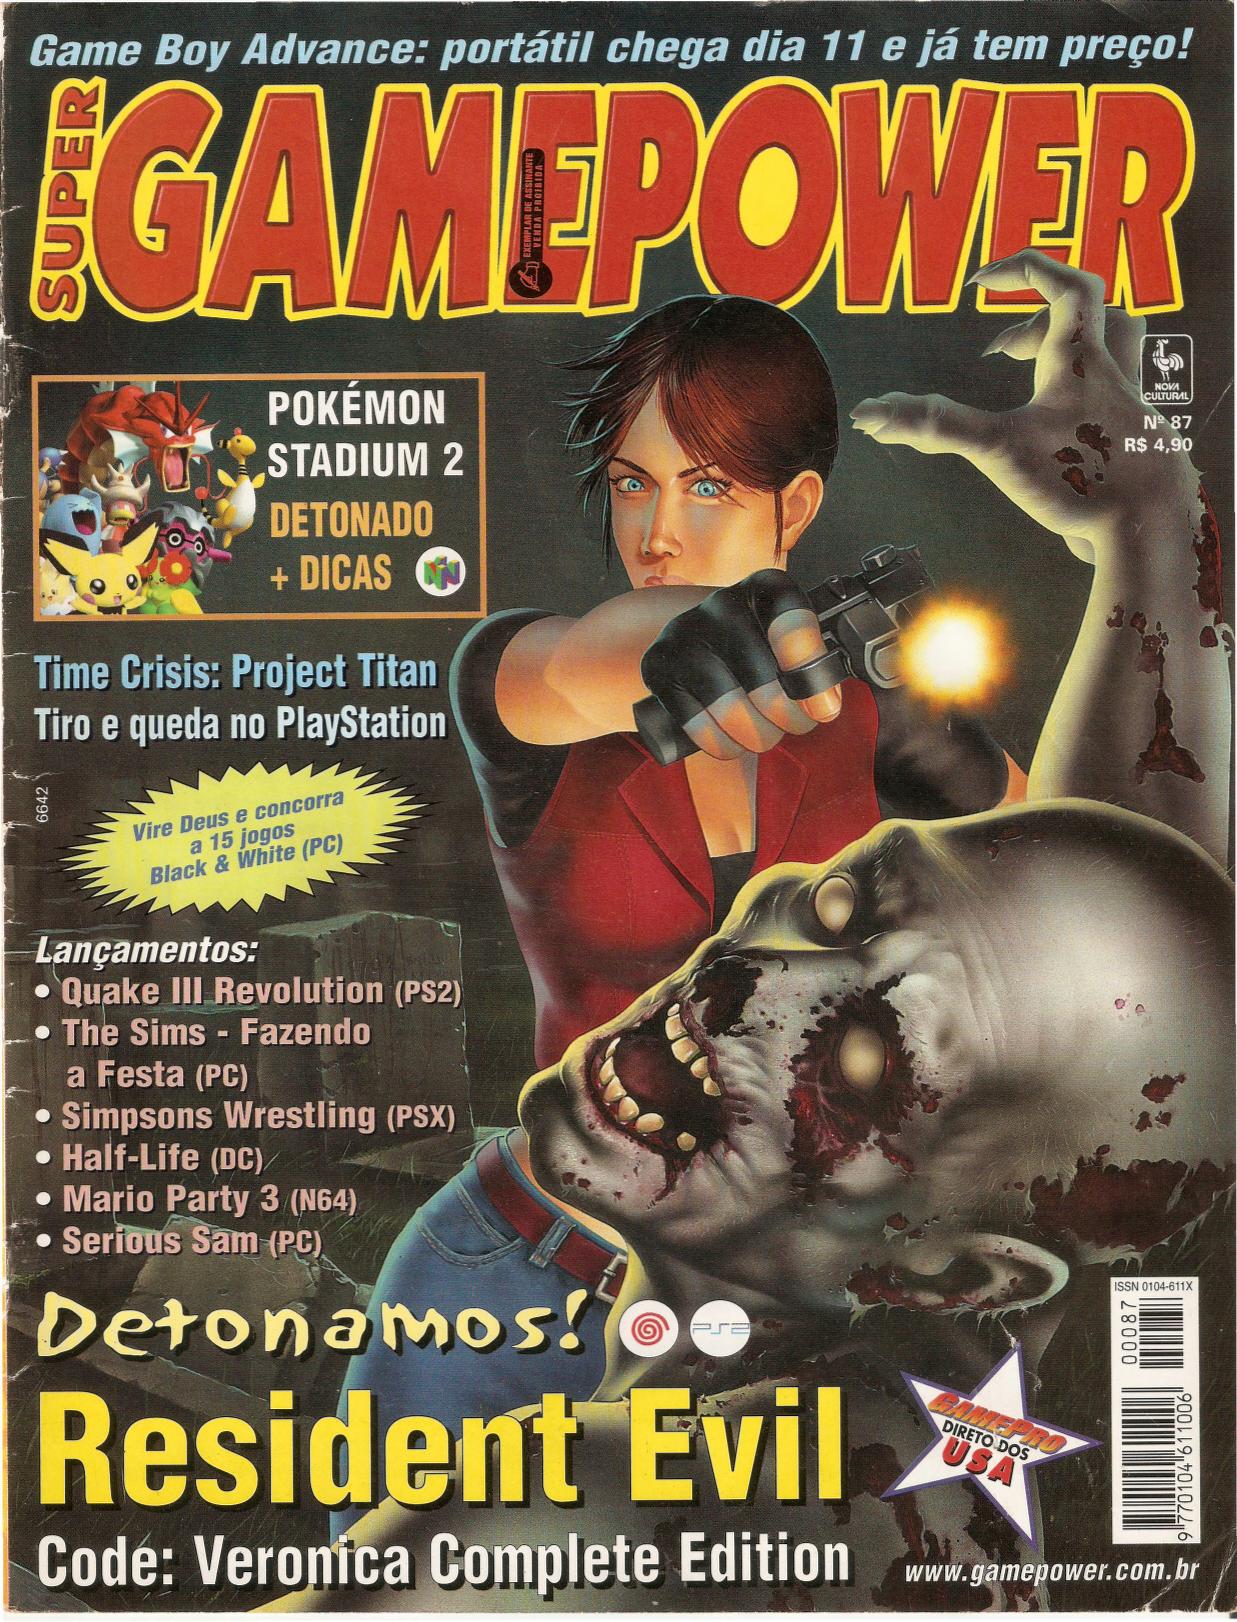 Super GamePower Nº 59 [ATUALIZADO]